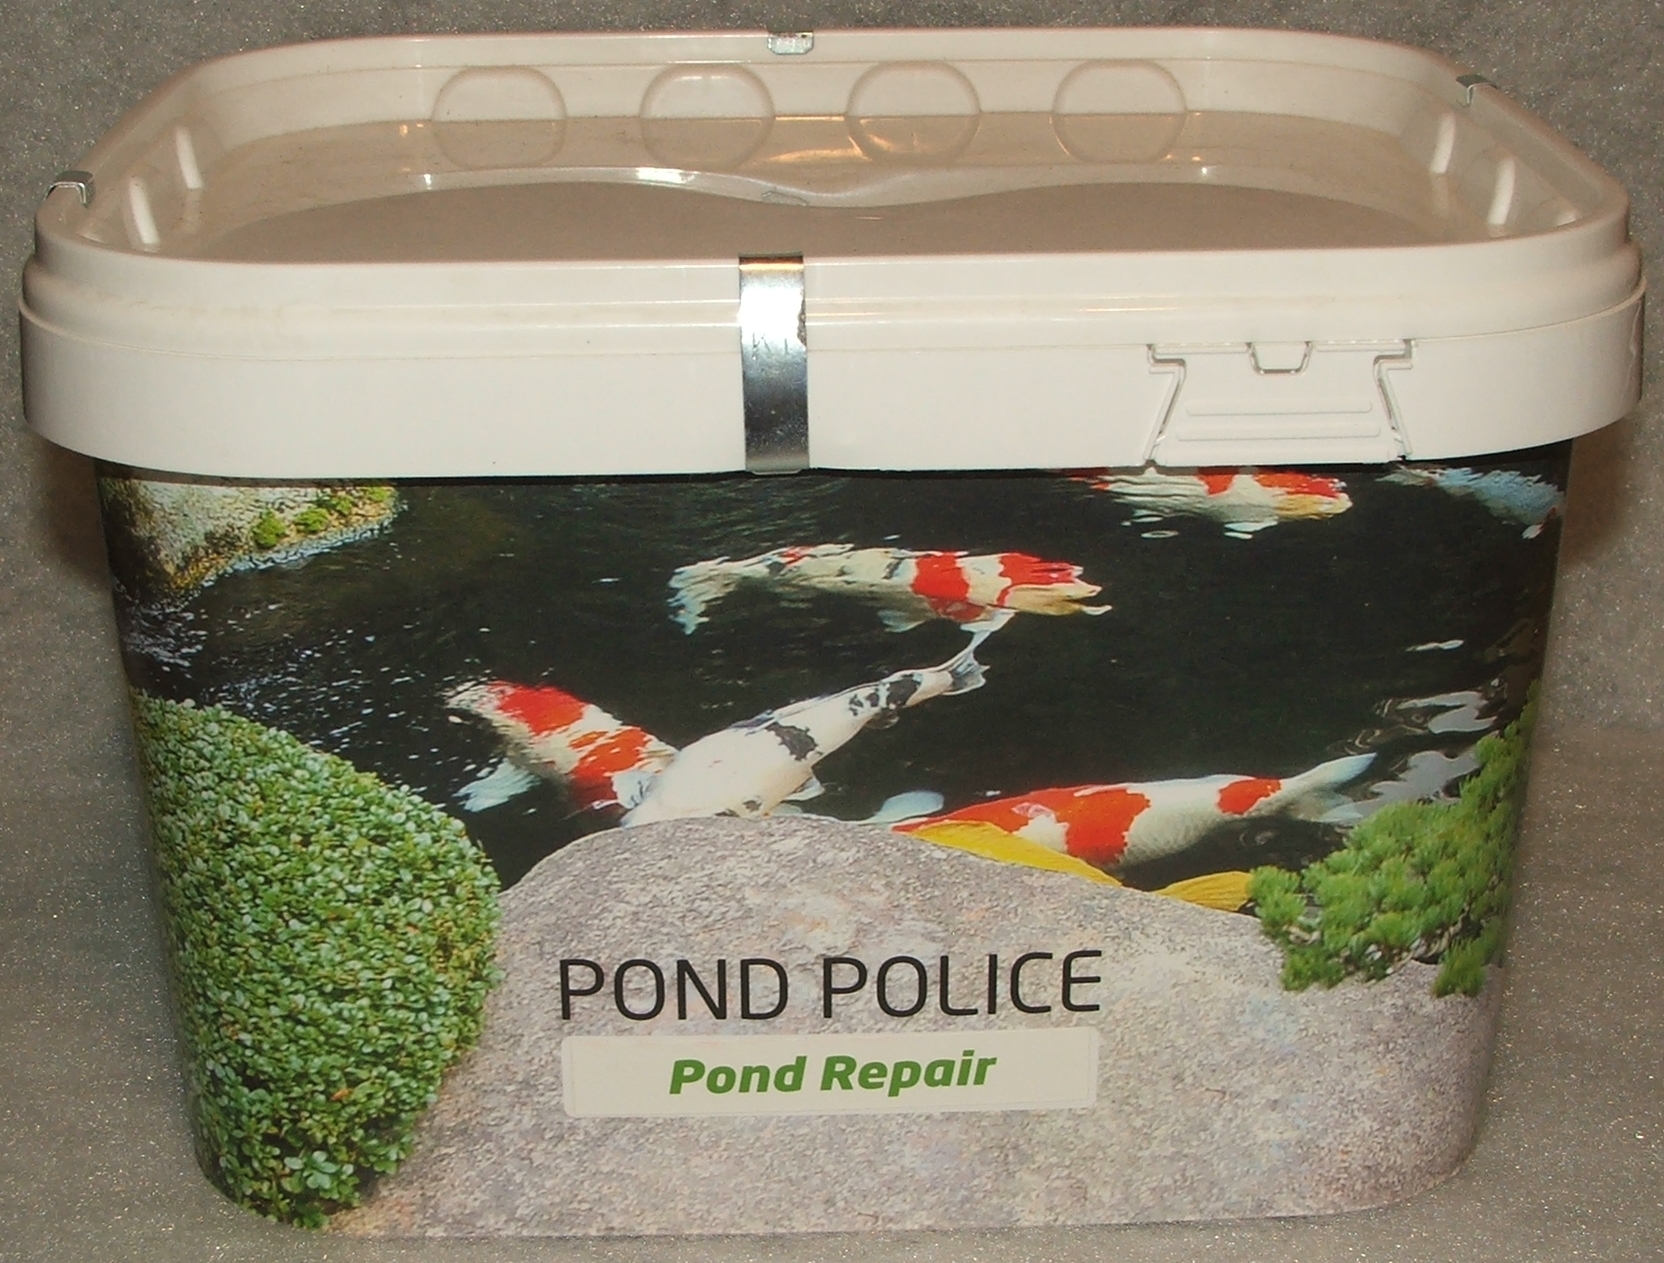 Pond Repair 40 kg